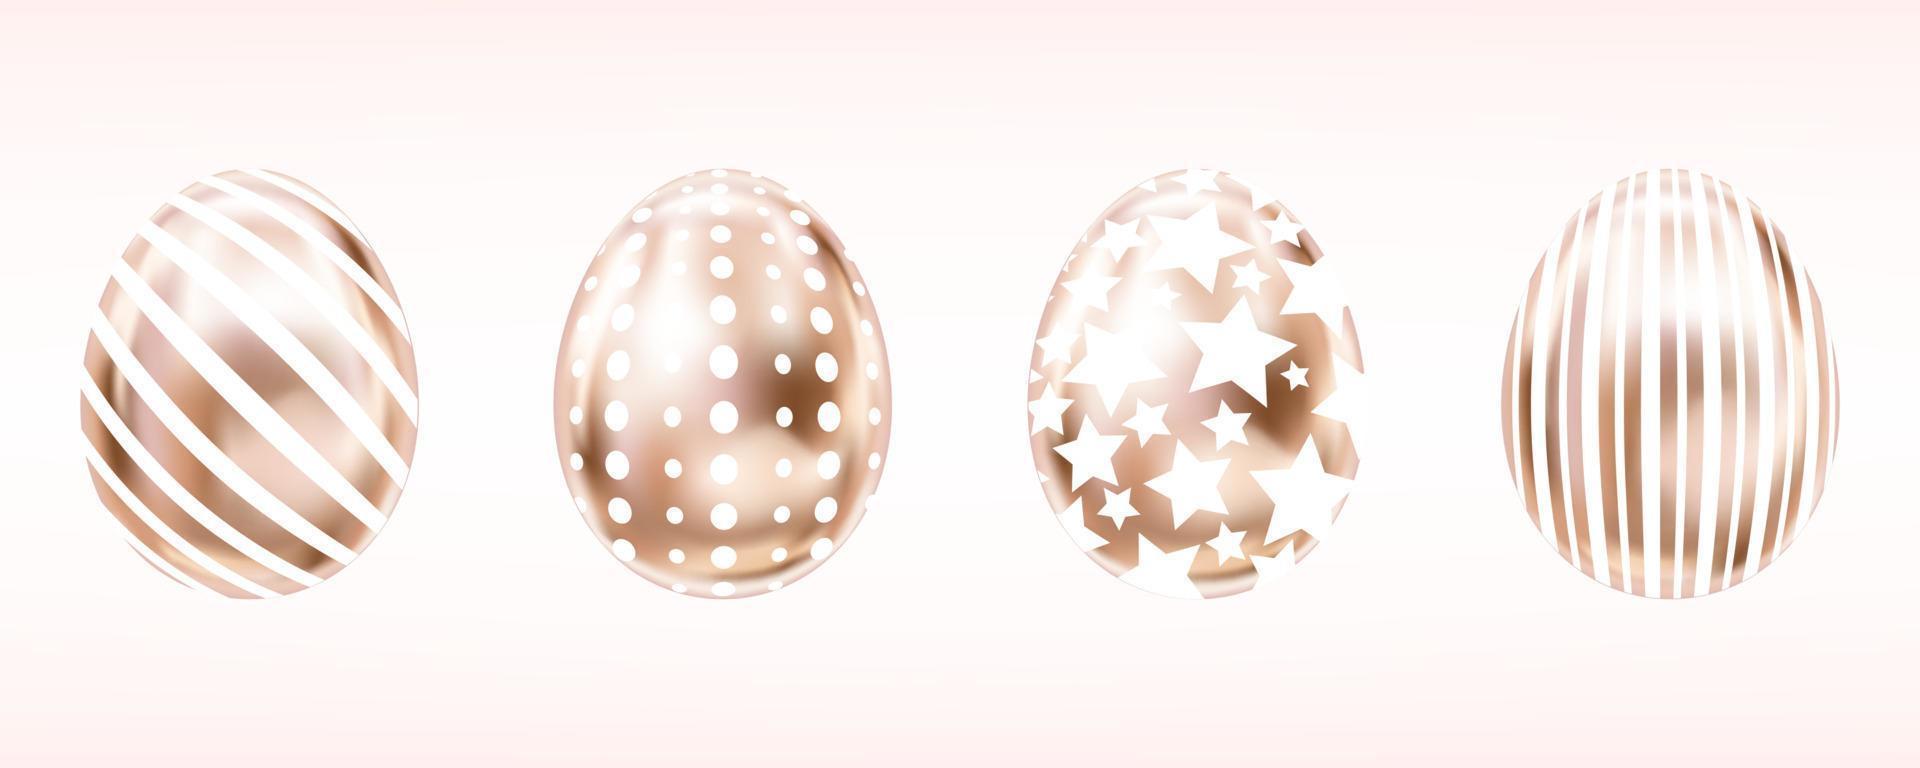 vier blik metallic eieren in roze kleur met witte strepen, stippen en sterren. geïsoleerde objecten voor paasdecoratie vector